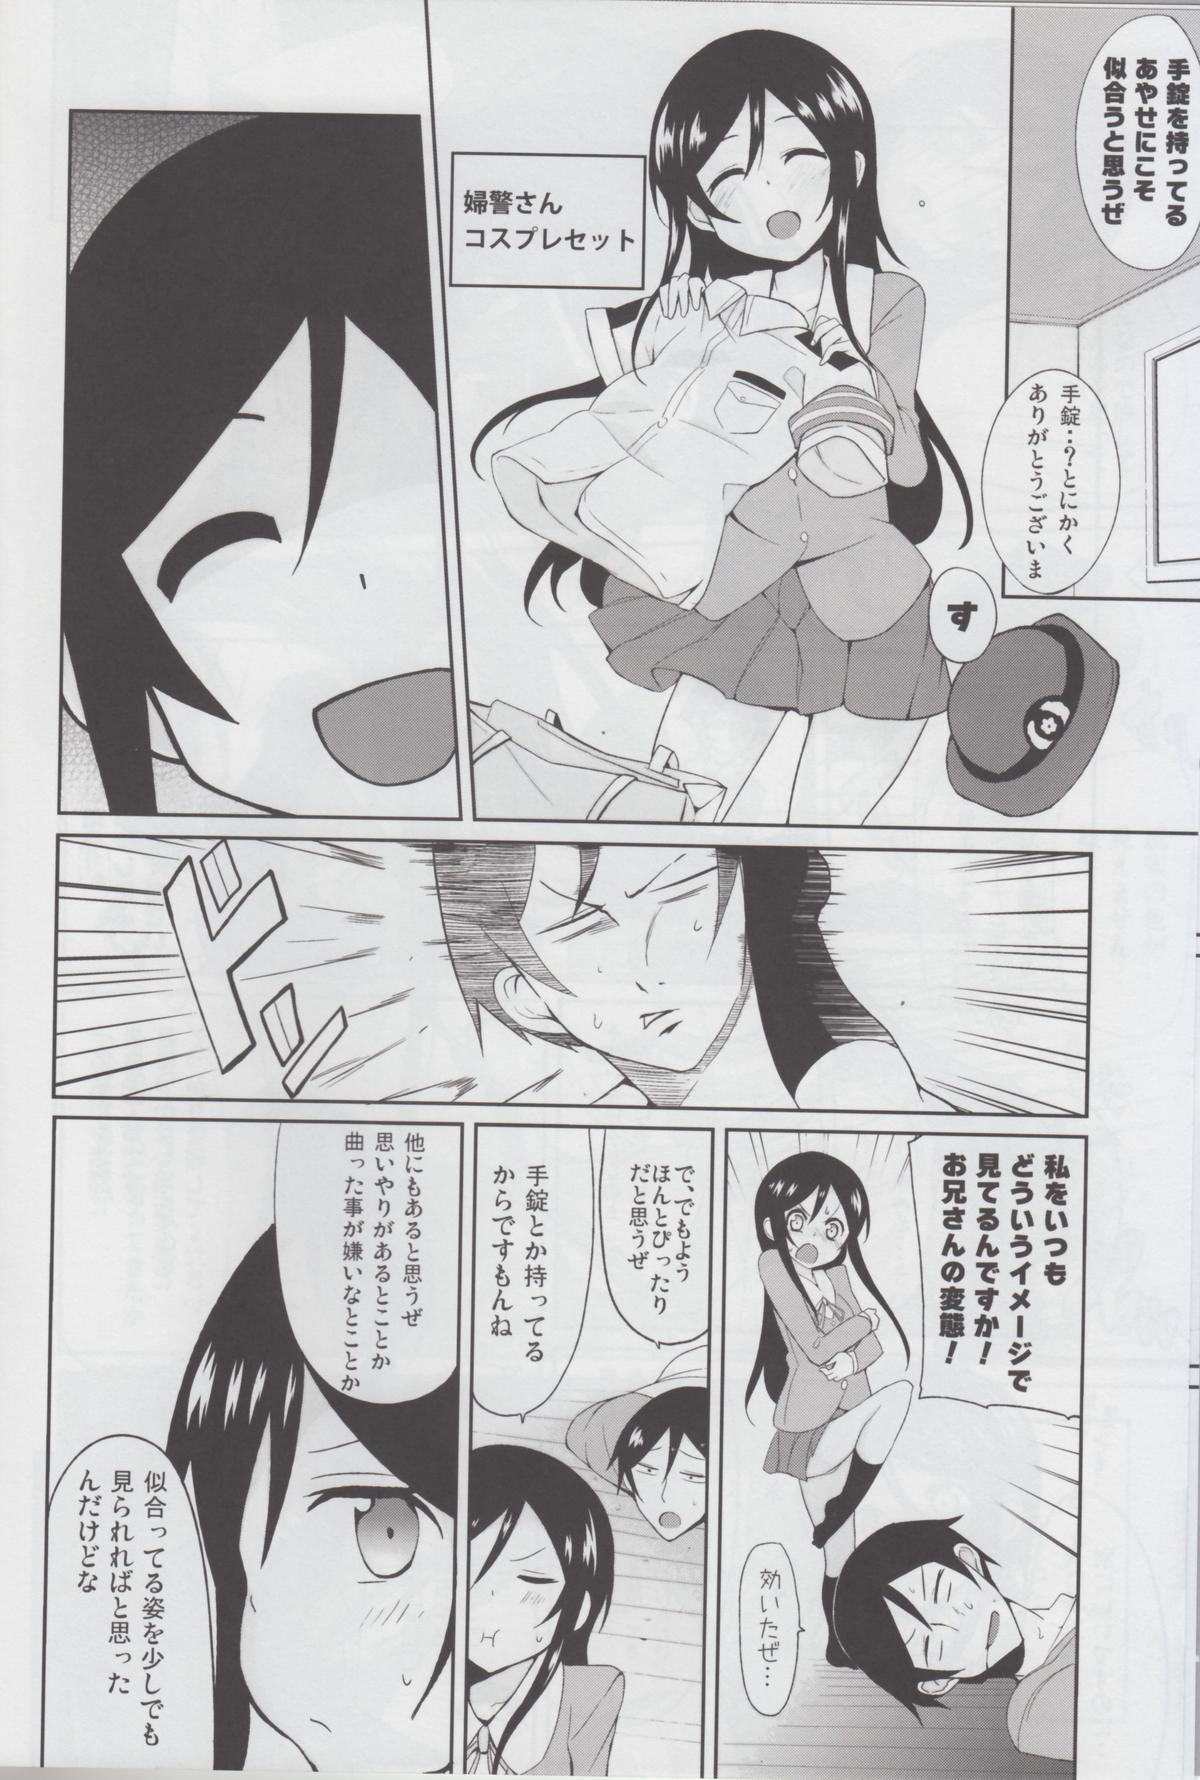 Milfporn Oniisan Heart Taiho Shimasukarane - Ore no imouto ga konna ni kawaii wake ga nai Inked - Page 8